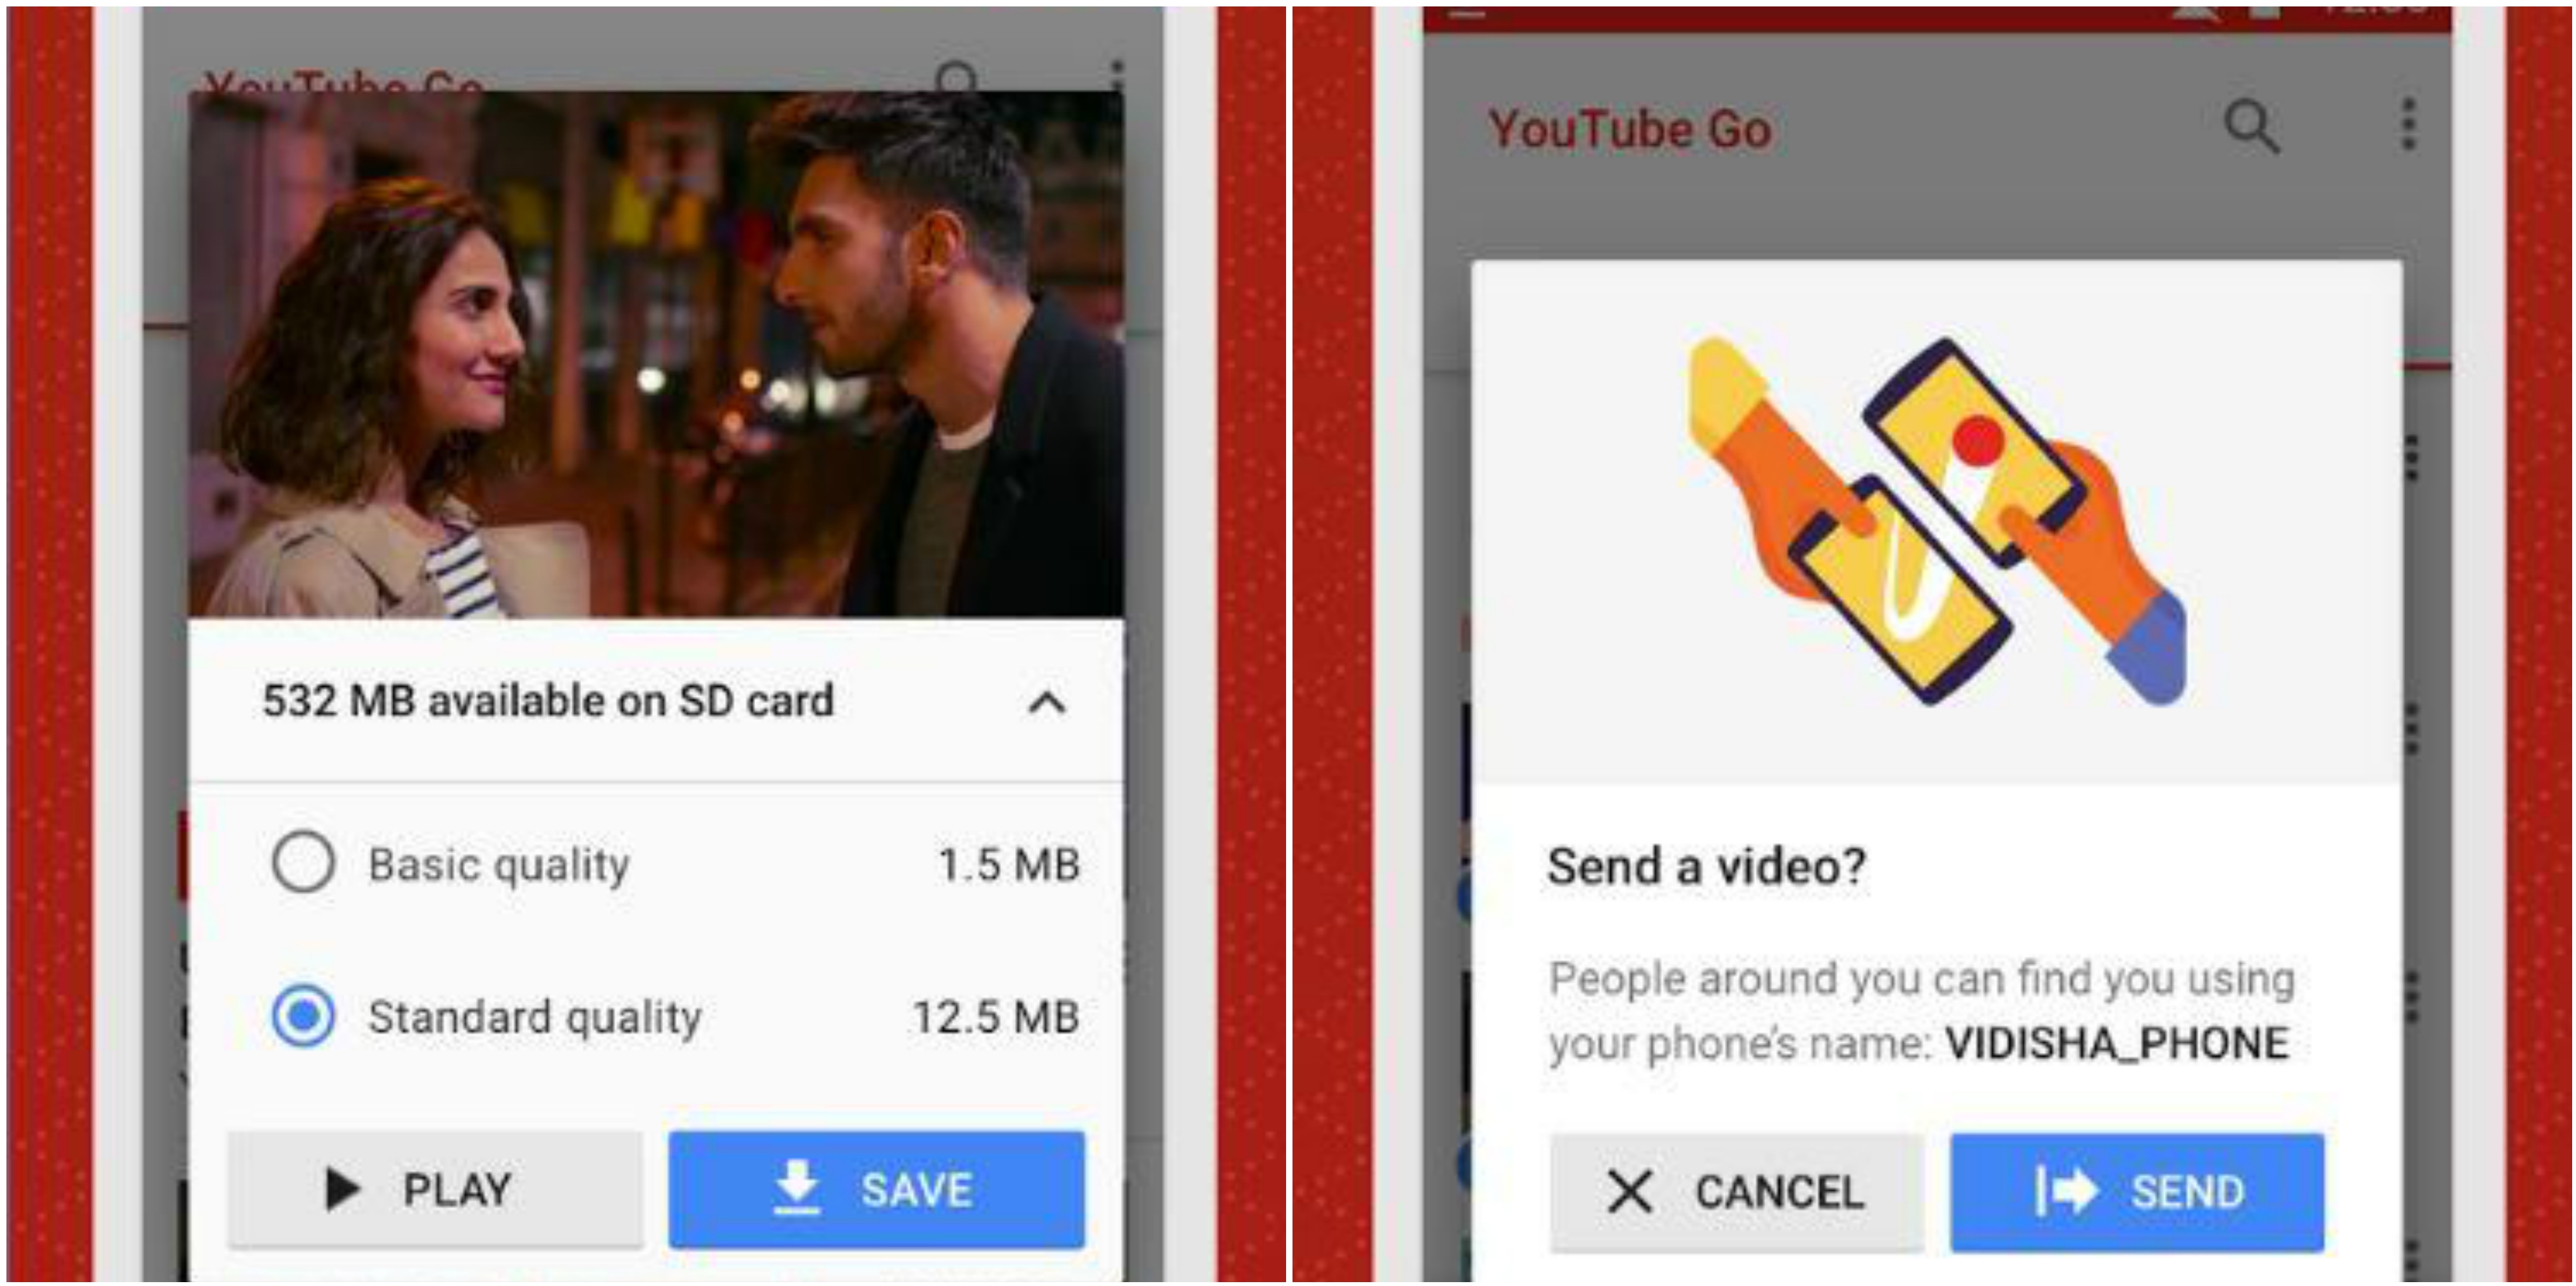 YouTube Go, la aplicación que permitirá bajar videos y verlos offline